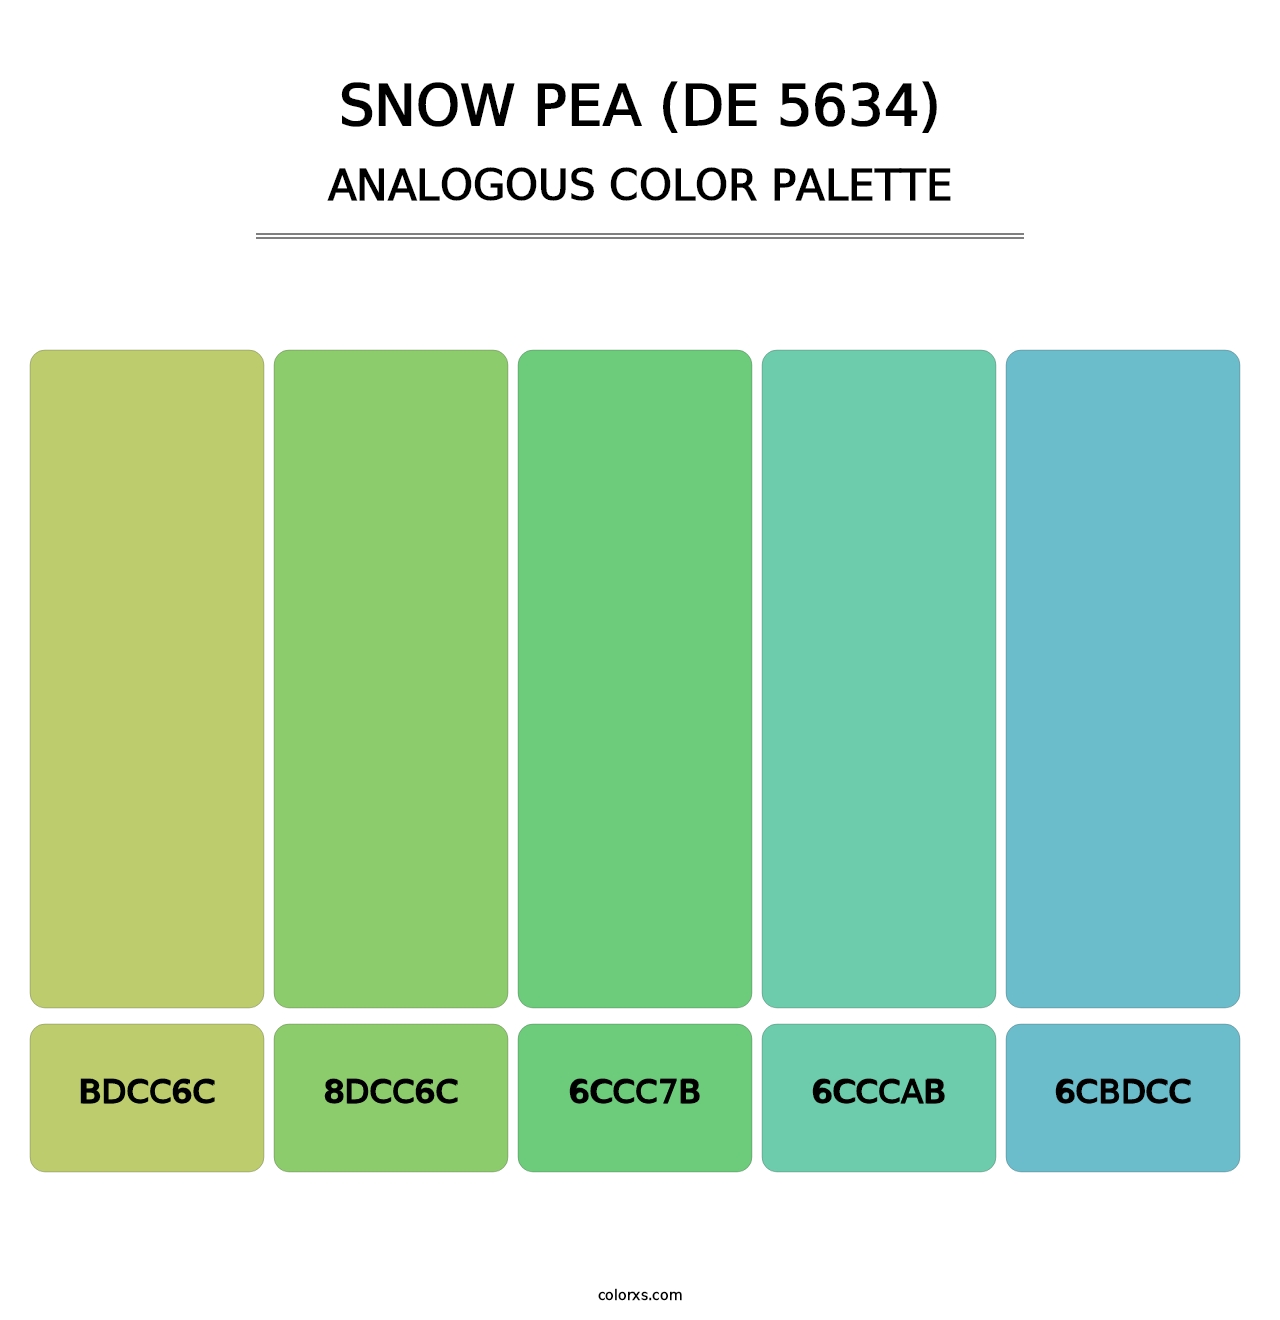 Snow Pea (DE 5634) - Analogous Color Palette